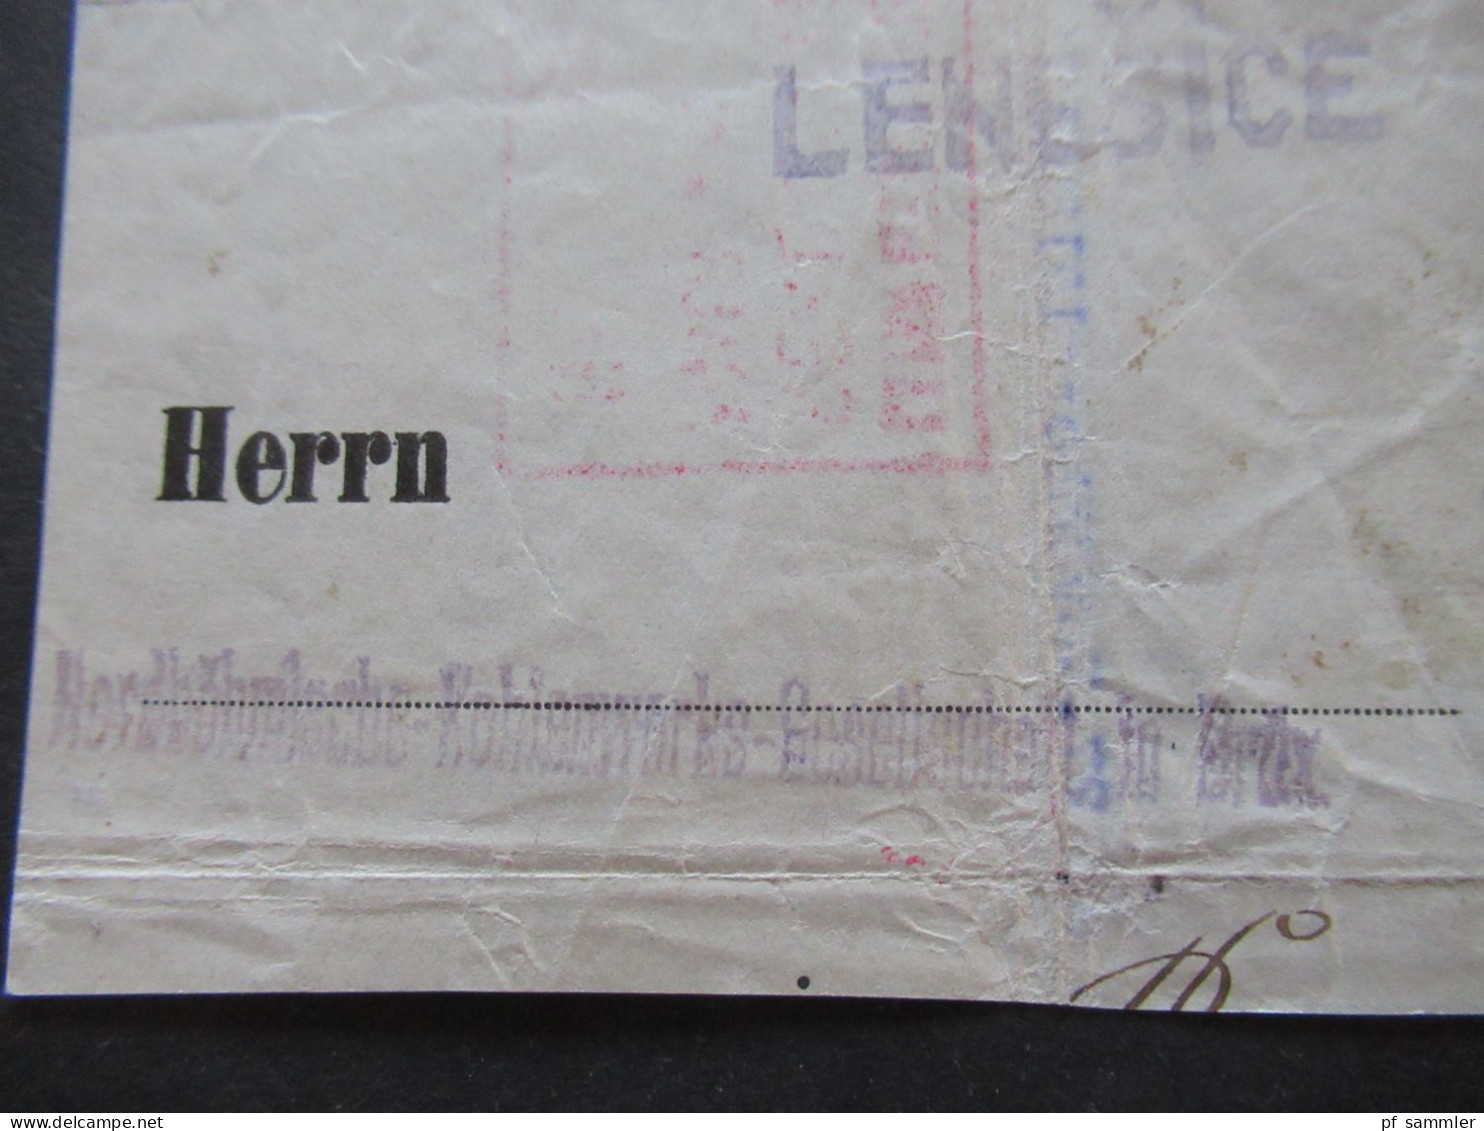 Österreich 1918 Nr.222 EF Auf Briefstück Violetter Stempel Lenesice / Frachtbrief ? Inhalt / Wirkliches Rohgewicht - Covers & Documents